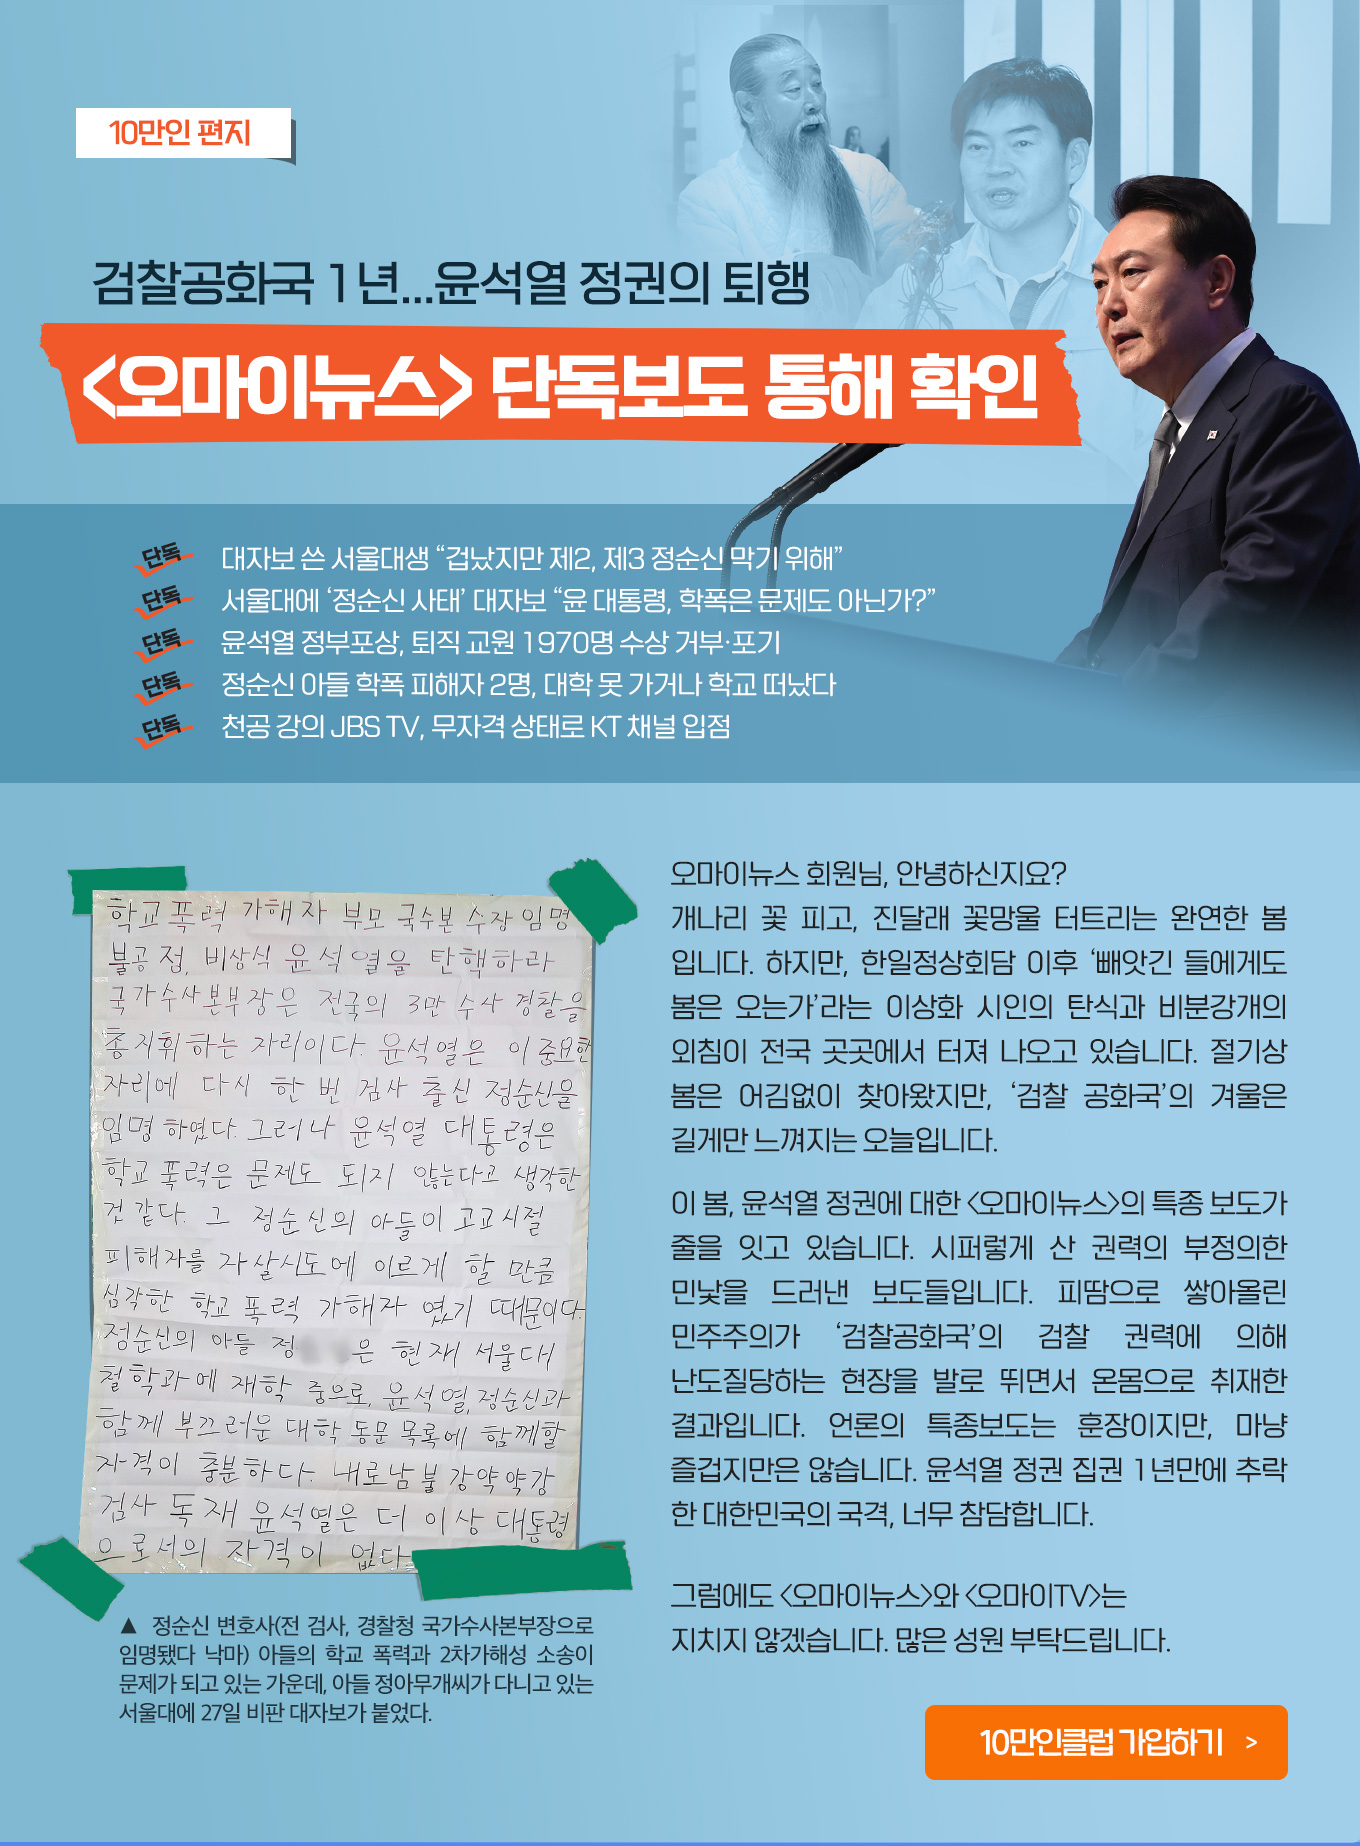 10만인 편지, 검찰공화국 1년...윤석열 정권의 퇴행, 오마이뉴스 단독보도 통해 확인